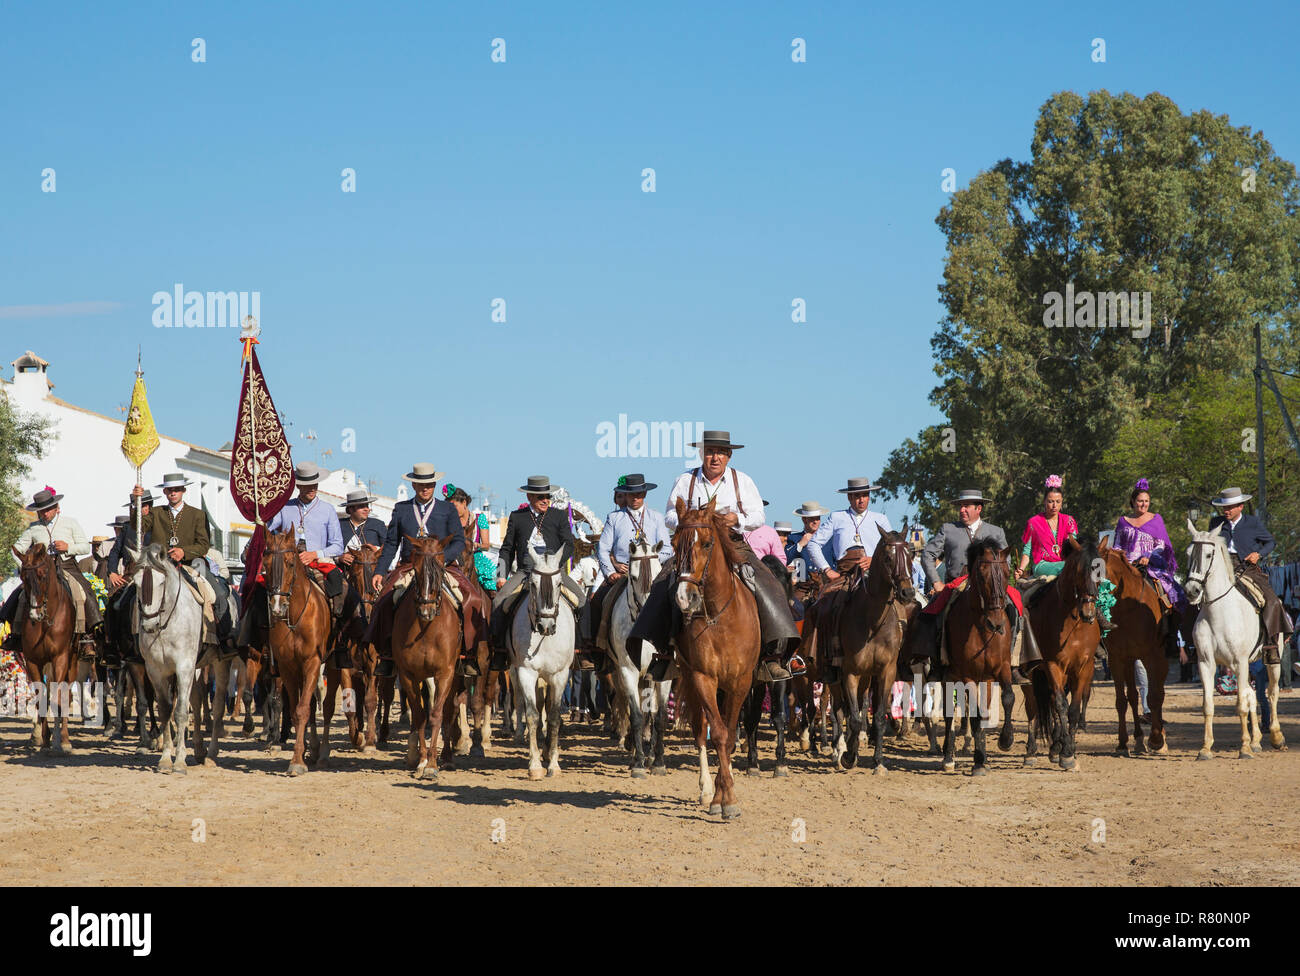 Habillé des cavaliers et cavalières pendant le pèlerinage annuel de la Pentecôte d'El Rocio. La province de Huelva, Andalousie, espagne. Banque D'Images